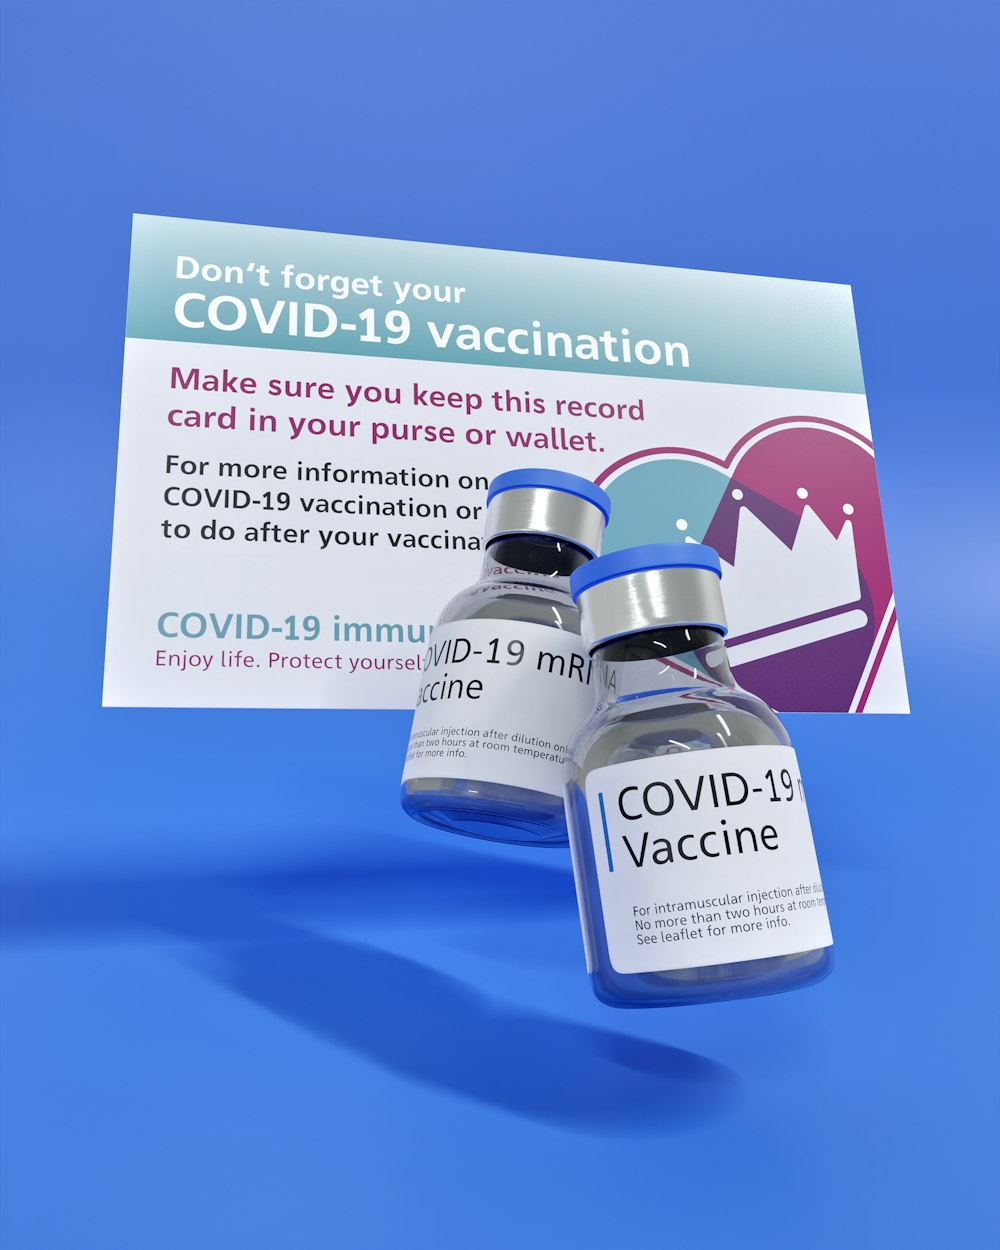 看板の隣に座っているCOVIDD-19ワクチンのボトル2本